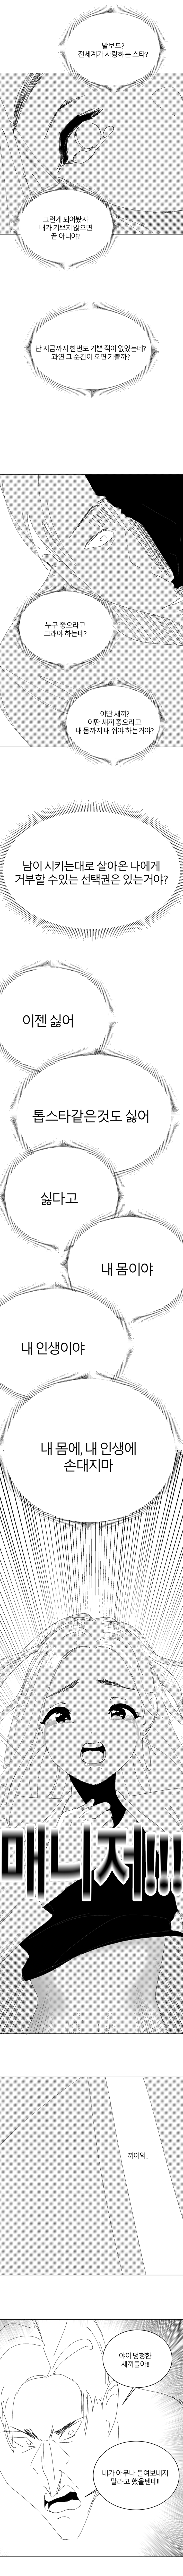 최영도) 매니저.manhwa